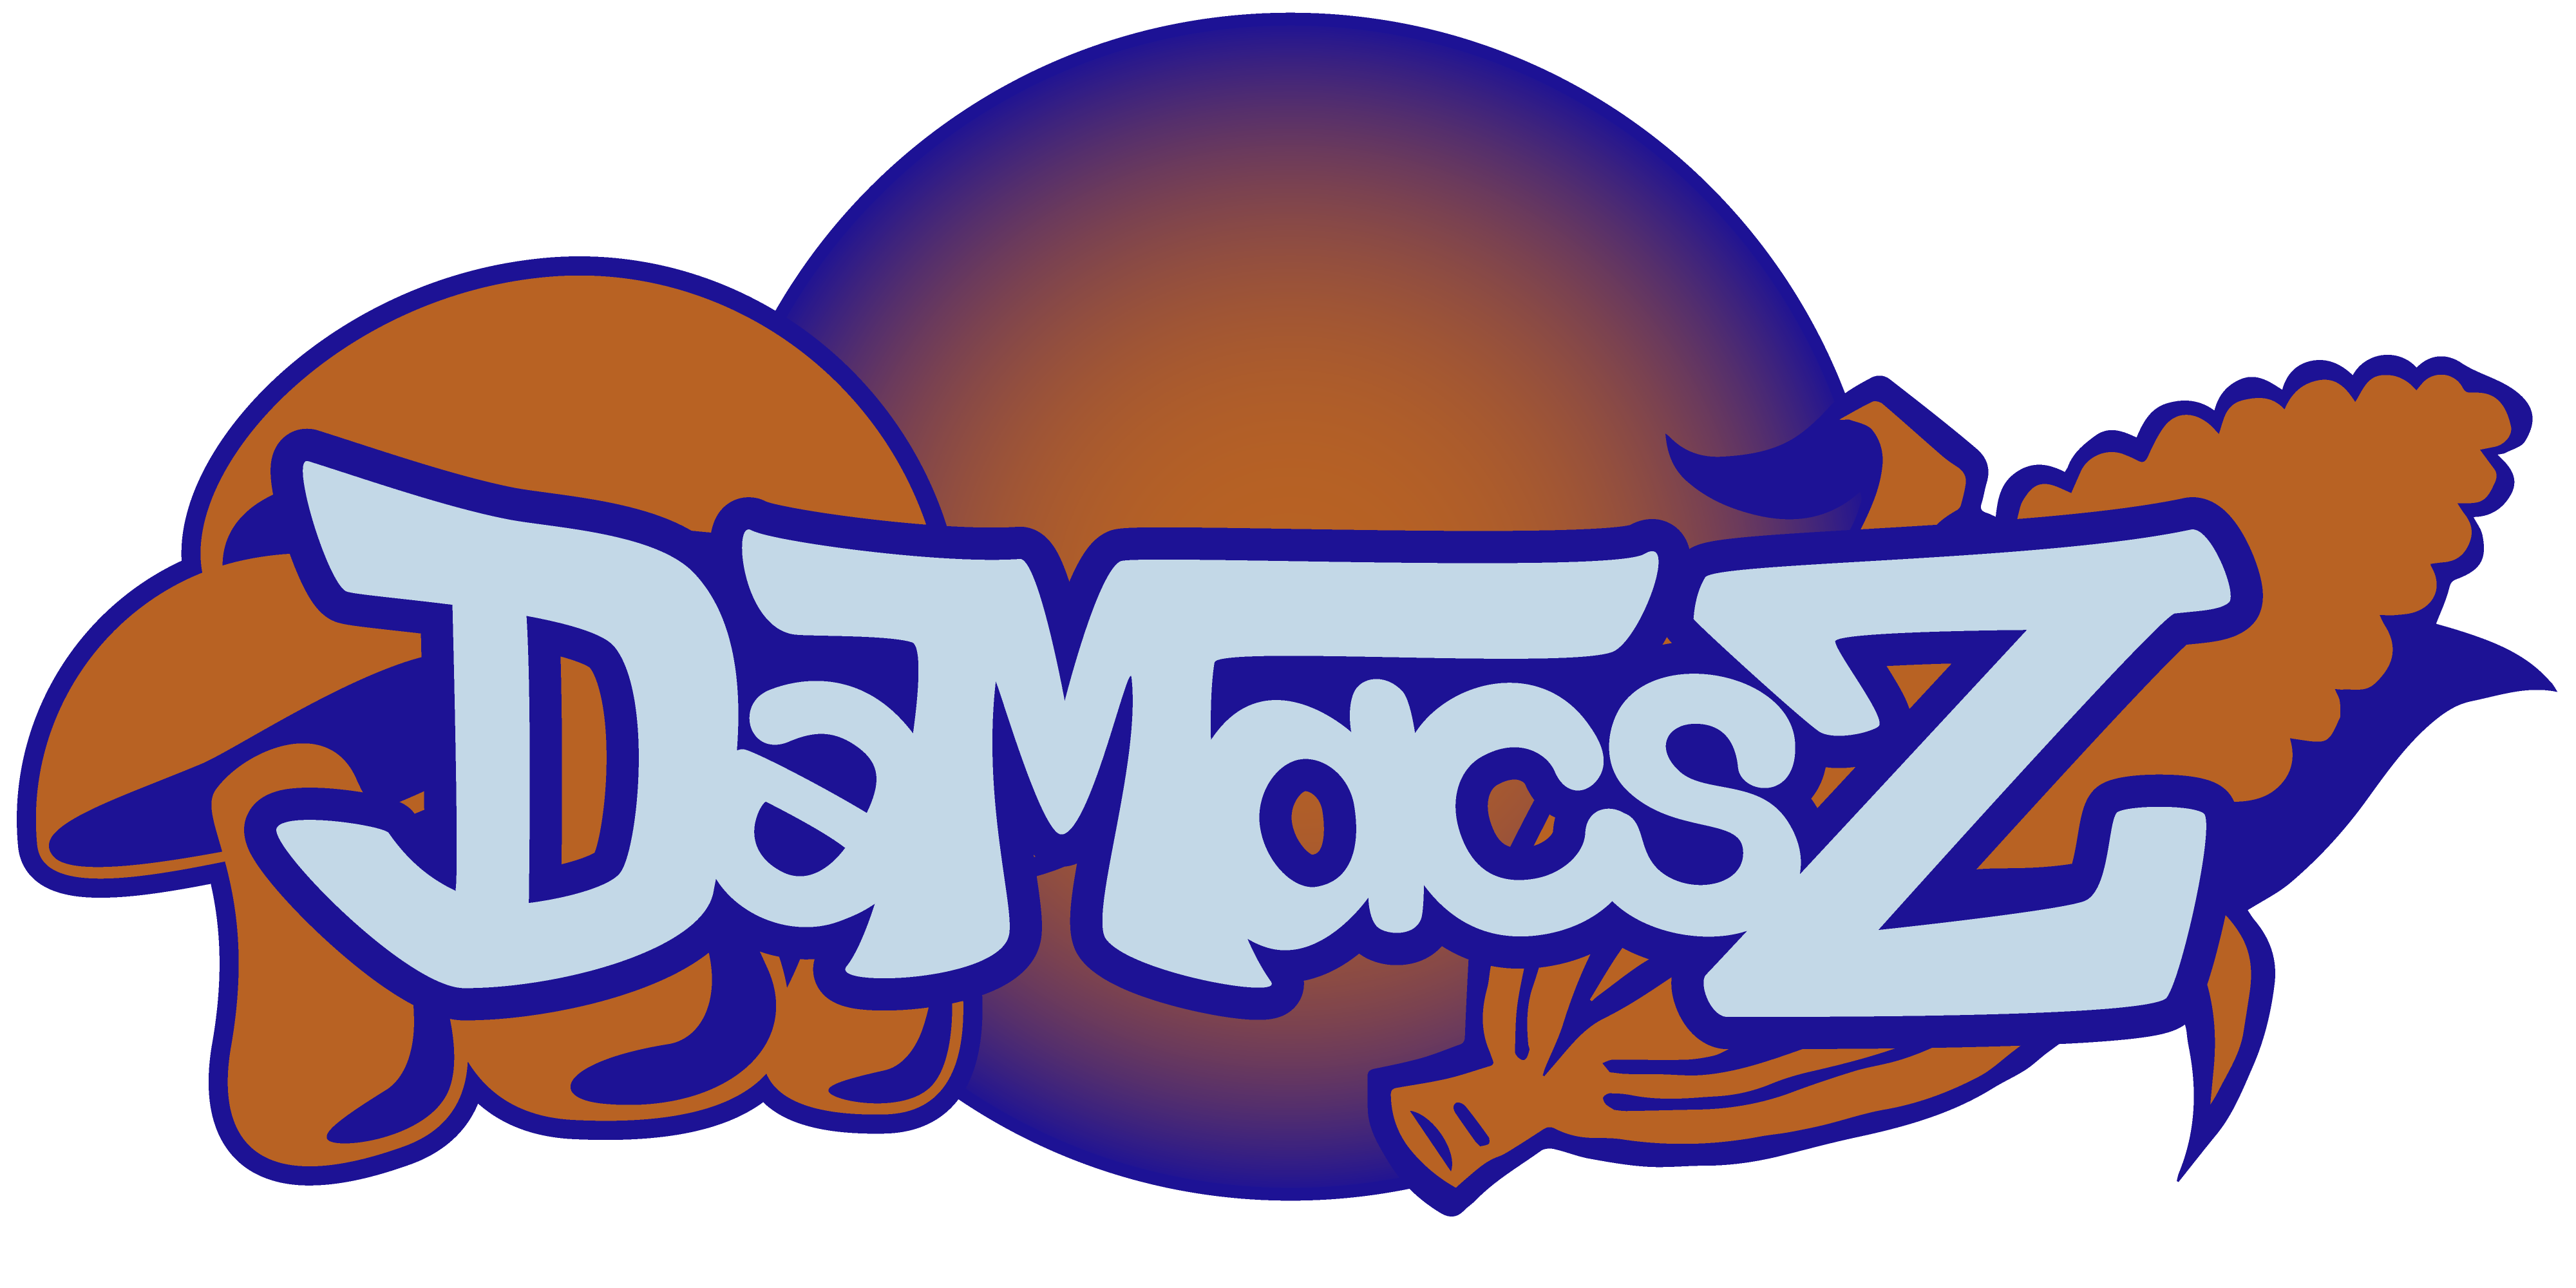 Dəmascz Logo over transparent background